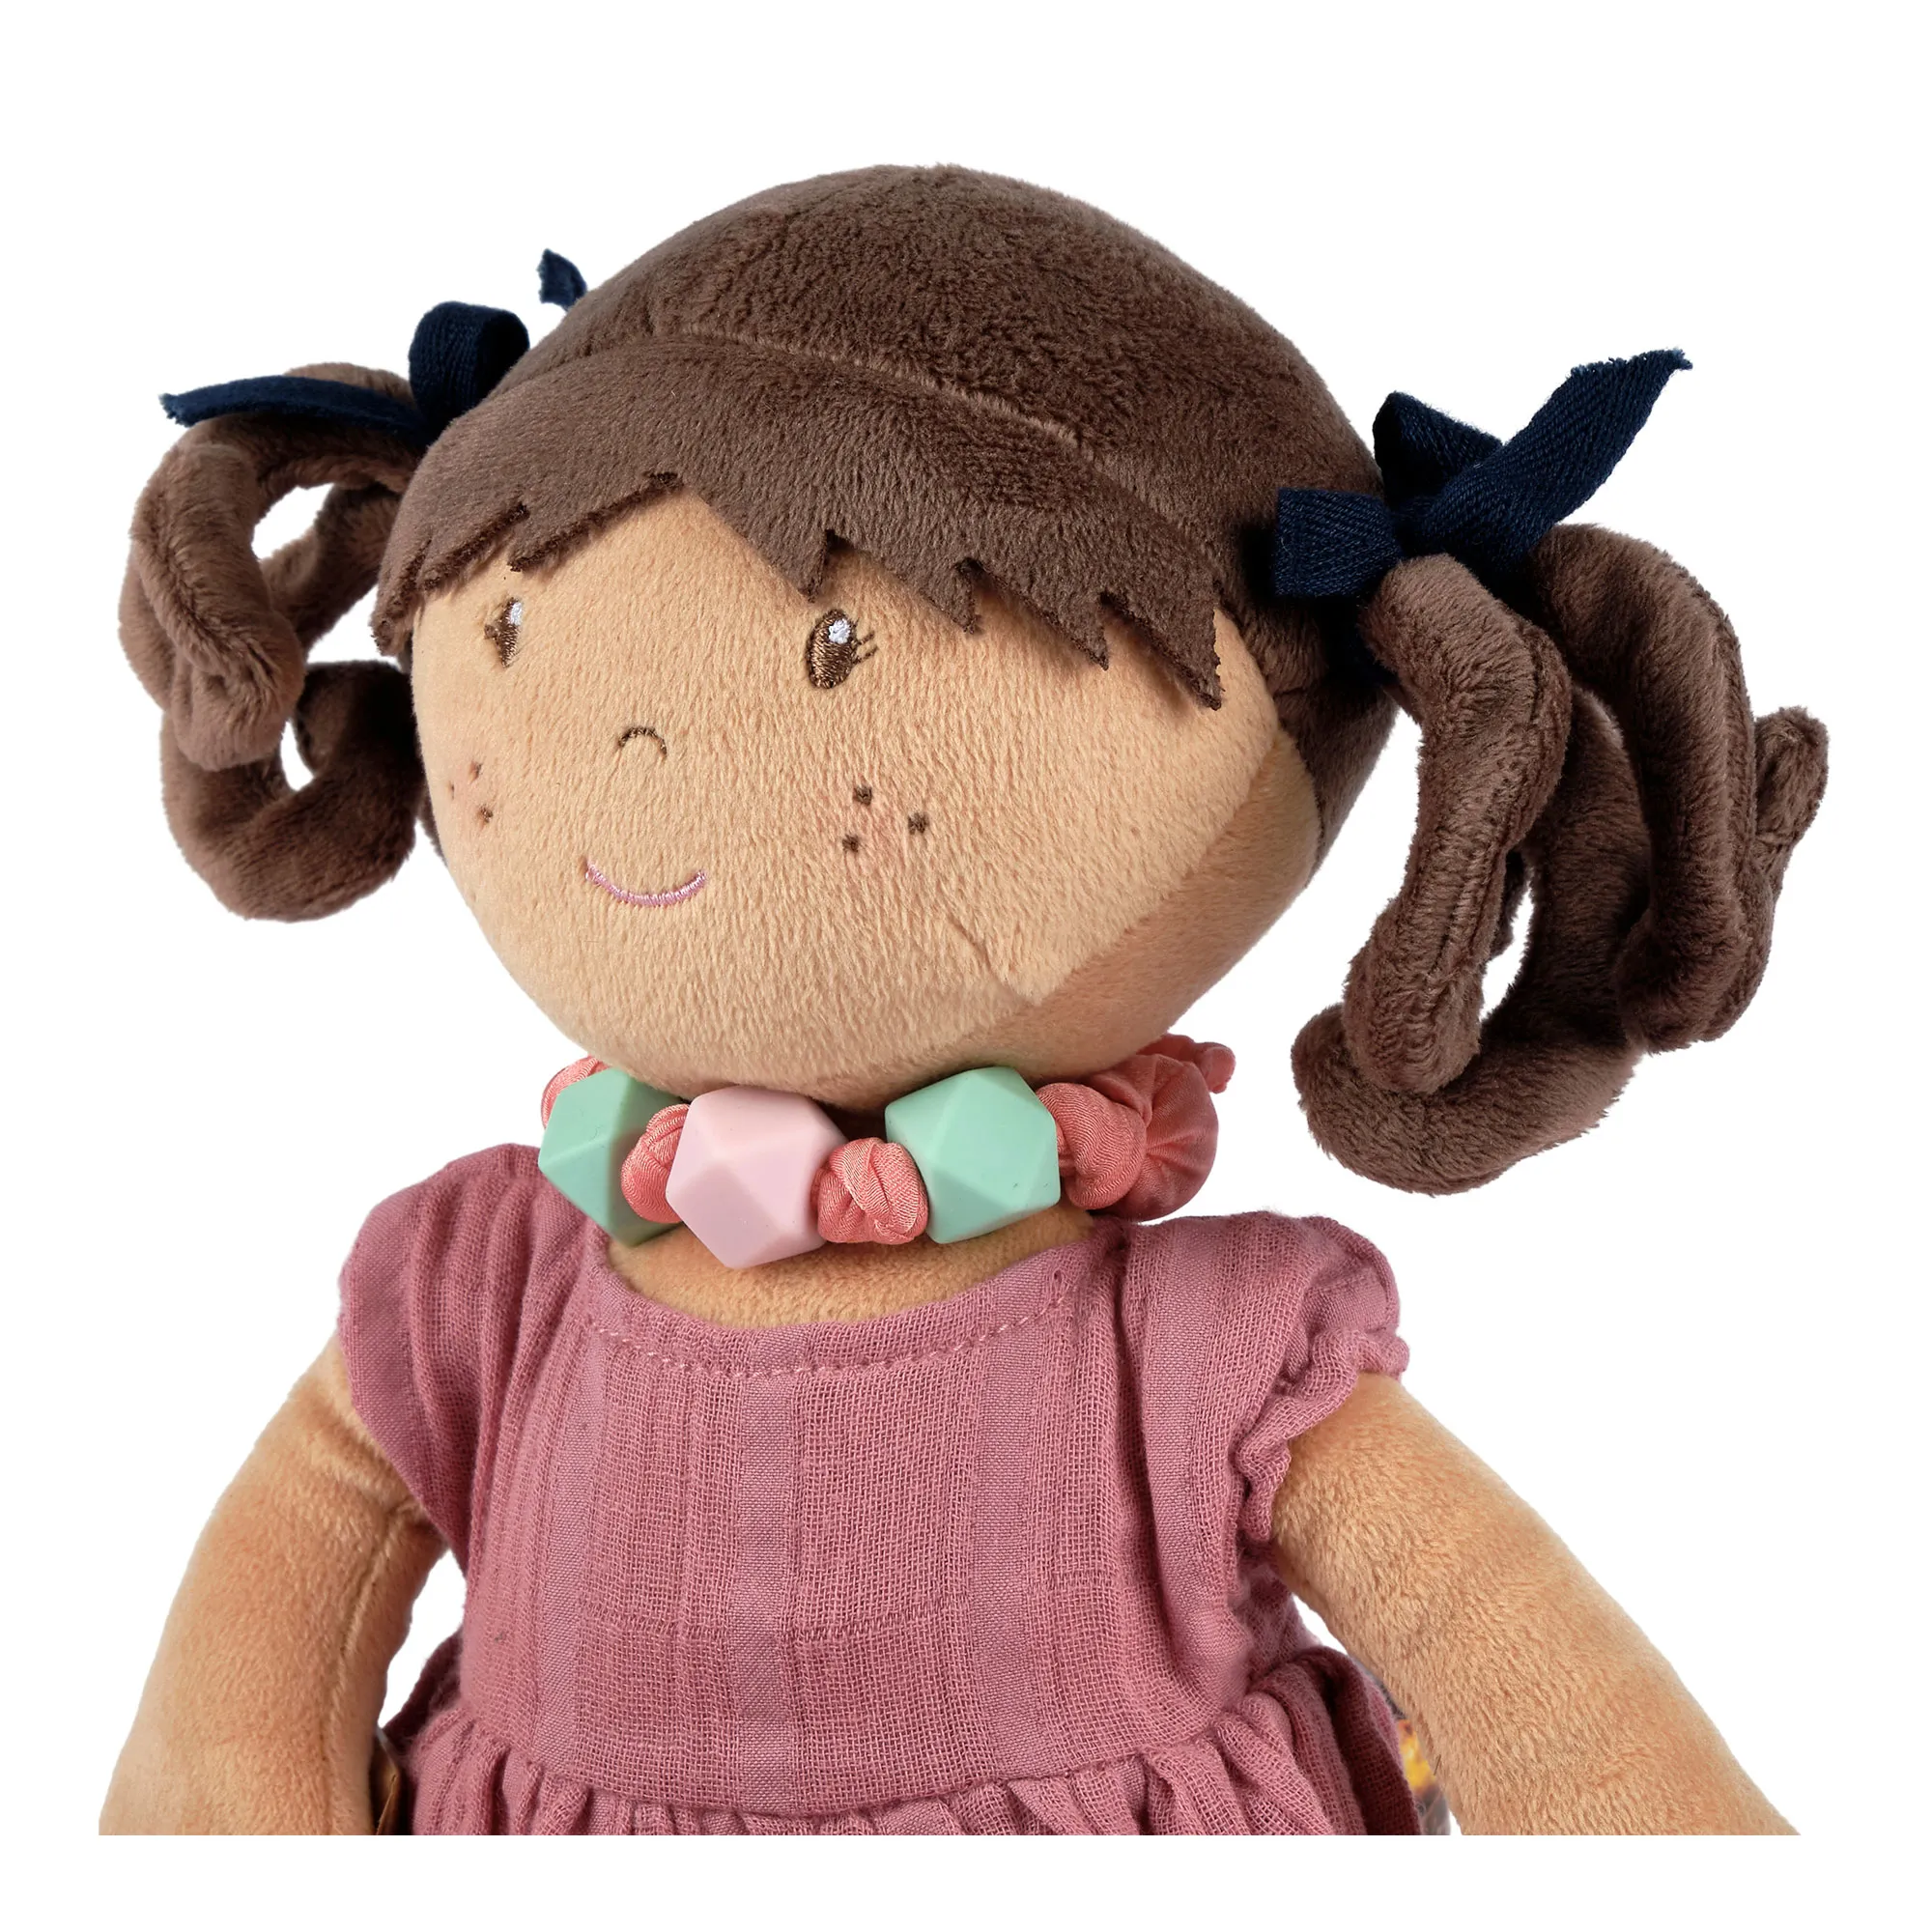 Bonikka látková bábika s náramkom - Mandy v mušelínových šatách 1×1 ks, látková bábika